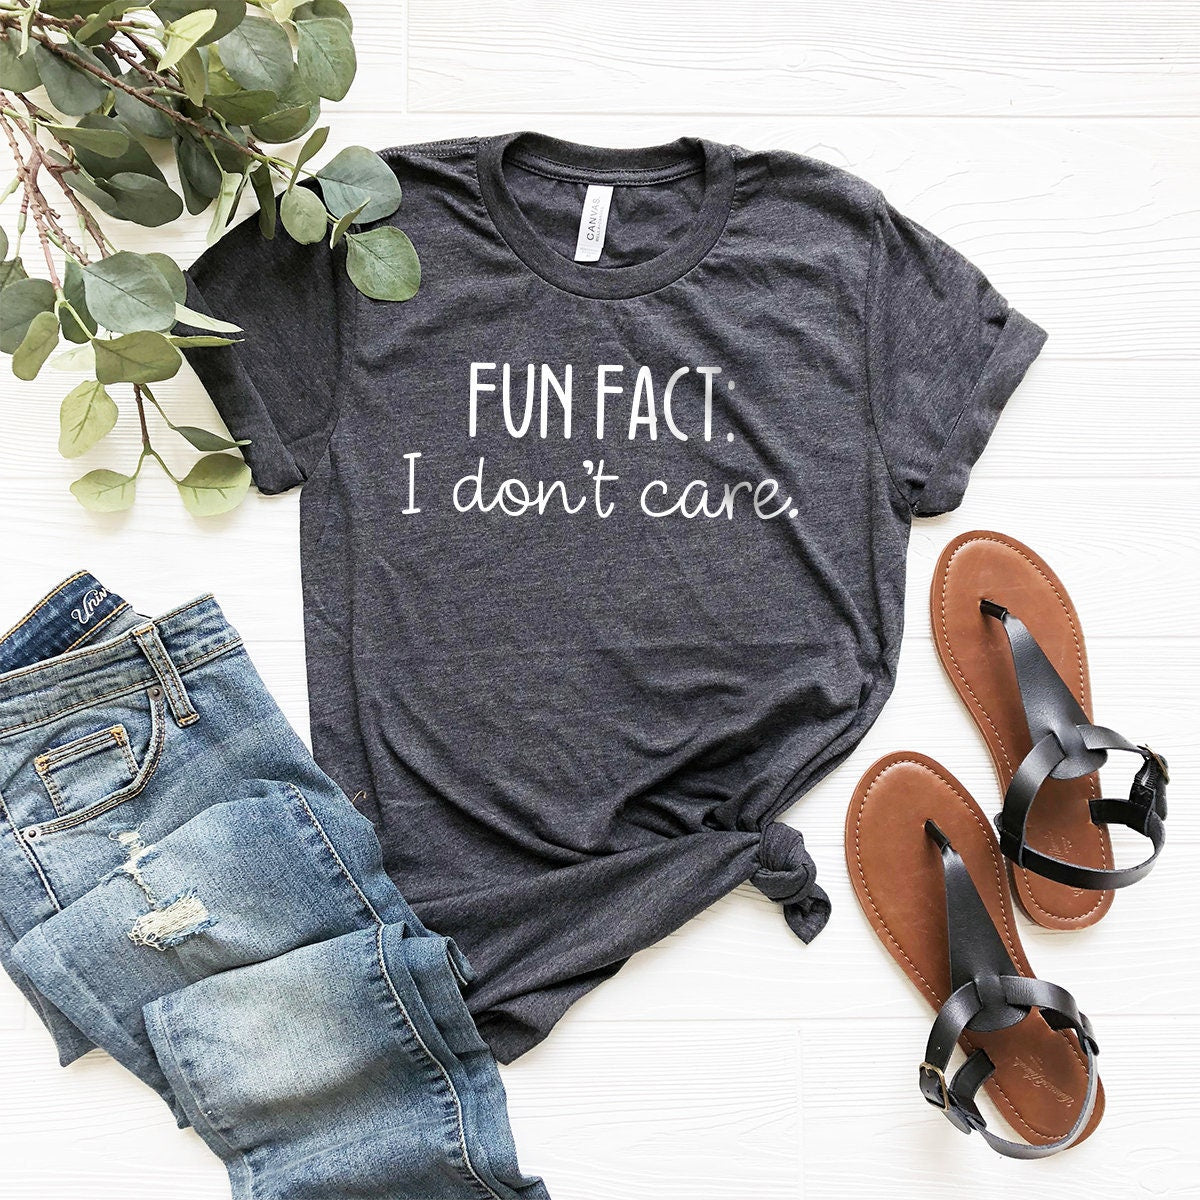 Sarcastic Quotes Shirt, Funny Sarcasm Shirt, Fun Fact I Don’t Care Tee, Funny T-Shirt, Shirt With Saying, Sarcasm Women Tee, Sarcastic Shirt - Fastdeliverytees.com